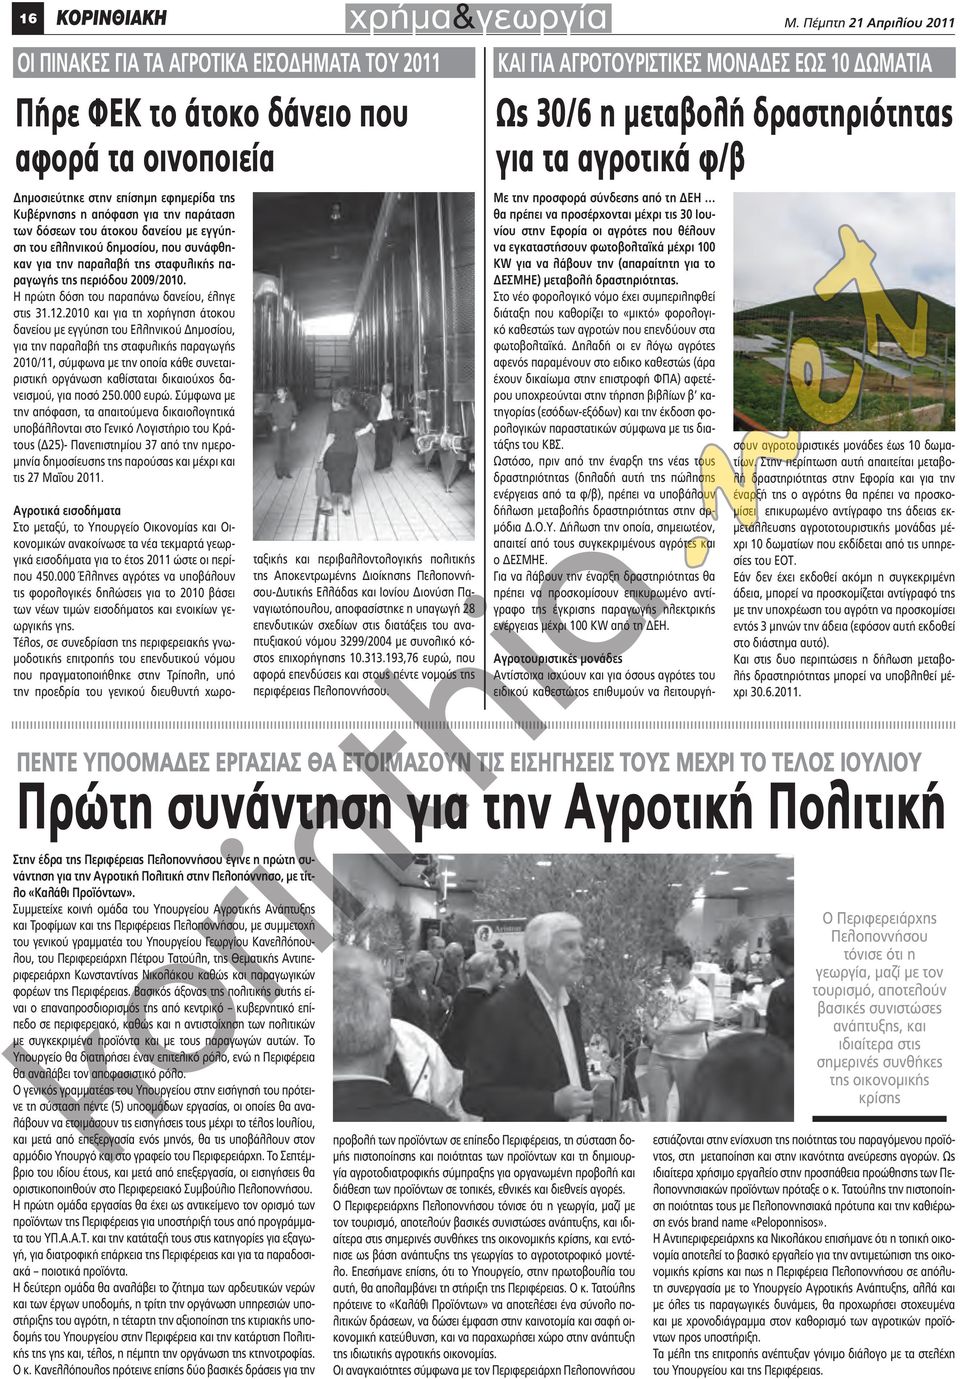 δραστηριότητας για τα αγροτικά φ/β Δημοσιεύτηκε στην επίσημη εφημερίδα της Κυβέρνησης η απόφαση για την παράταση των δόσεων του άτοκου δανείου με εγγύηση του ελληνικού δημοσίου, που συνάφθηκαν για